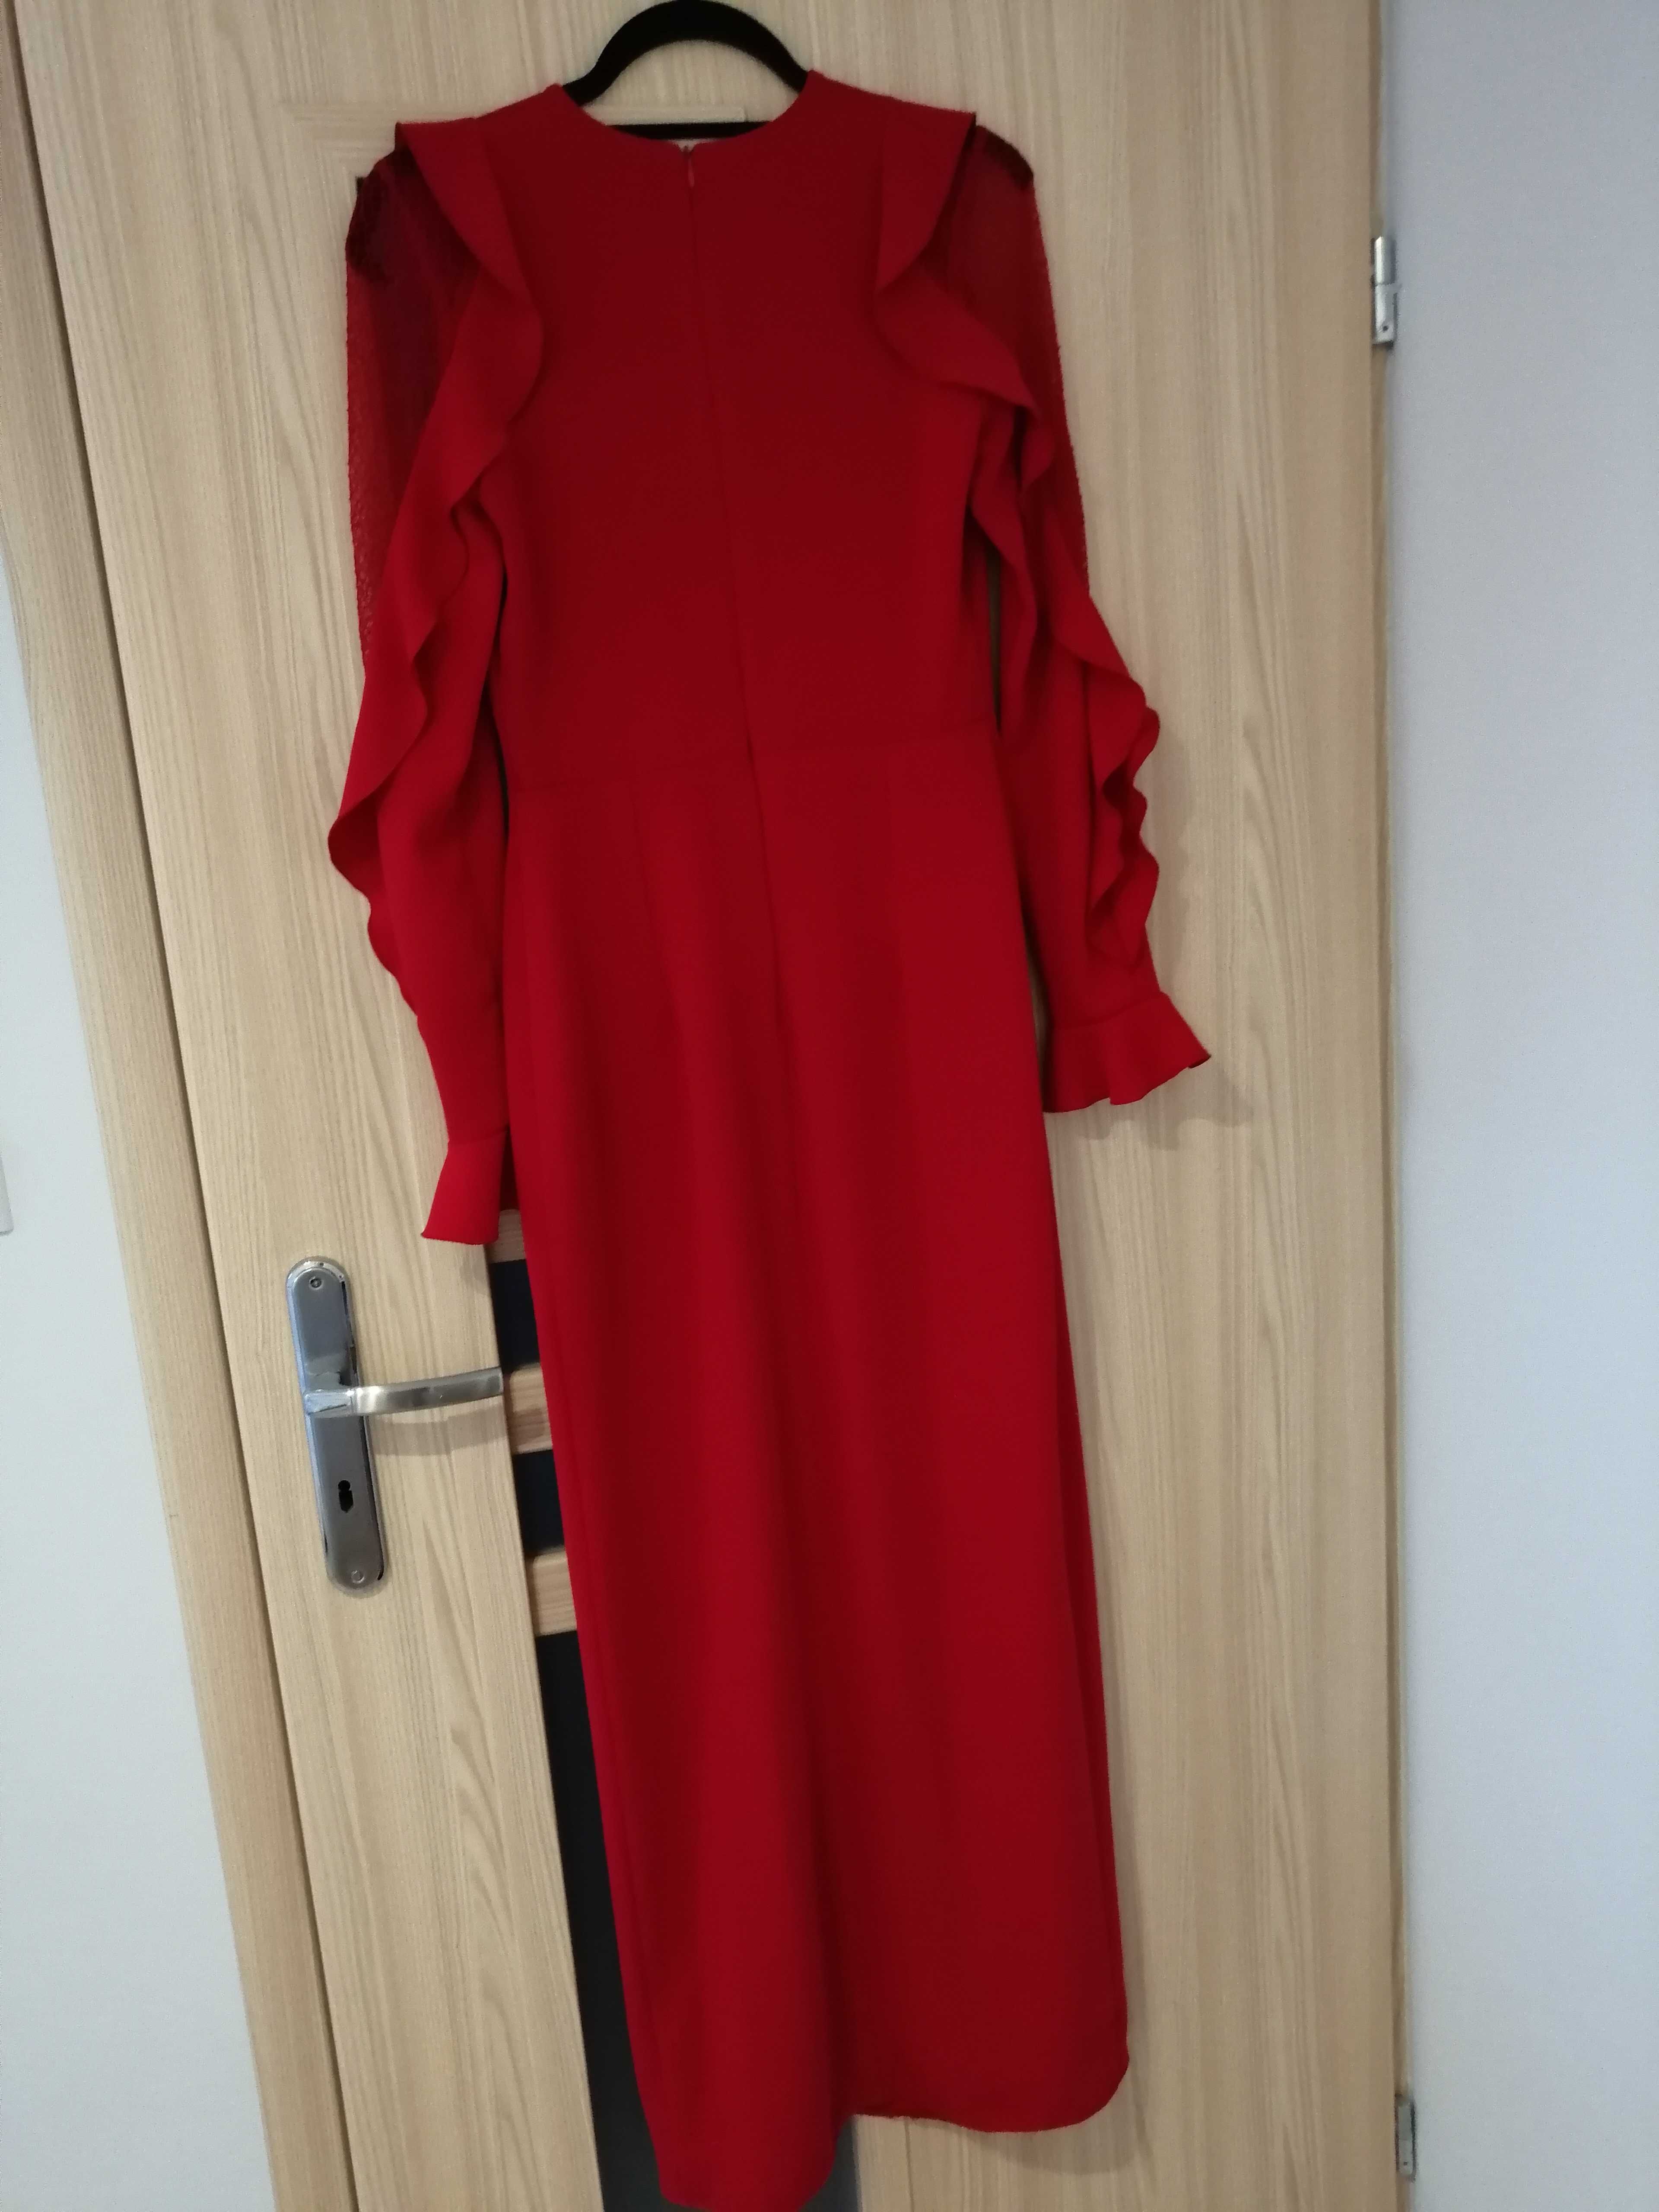 Długa czerwona sukienka 36 Elite Look